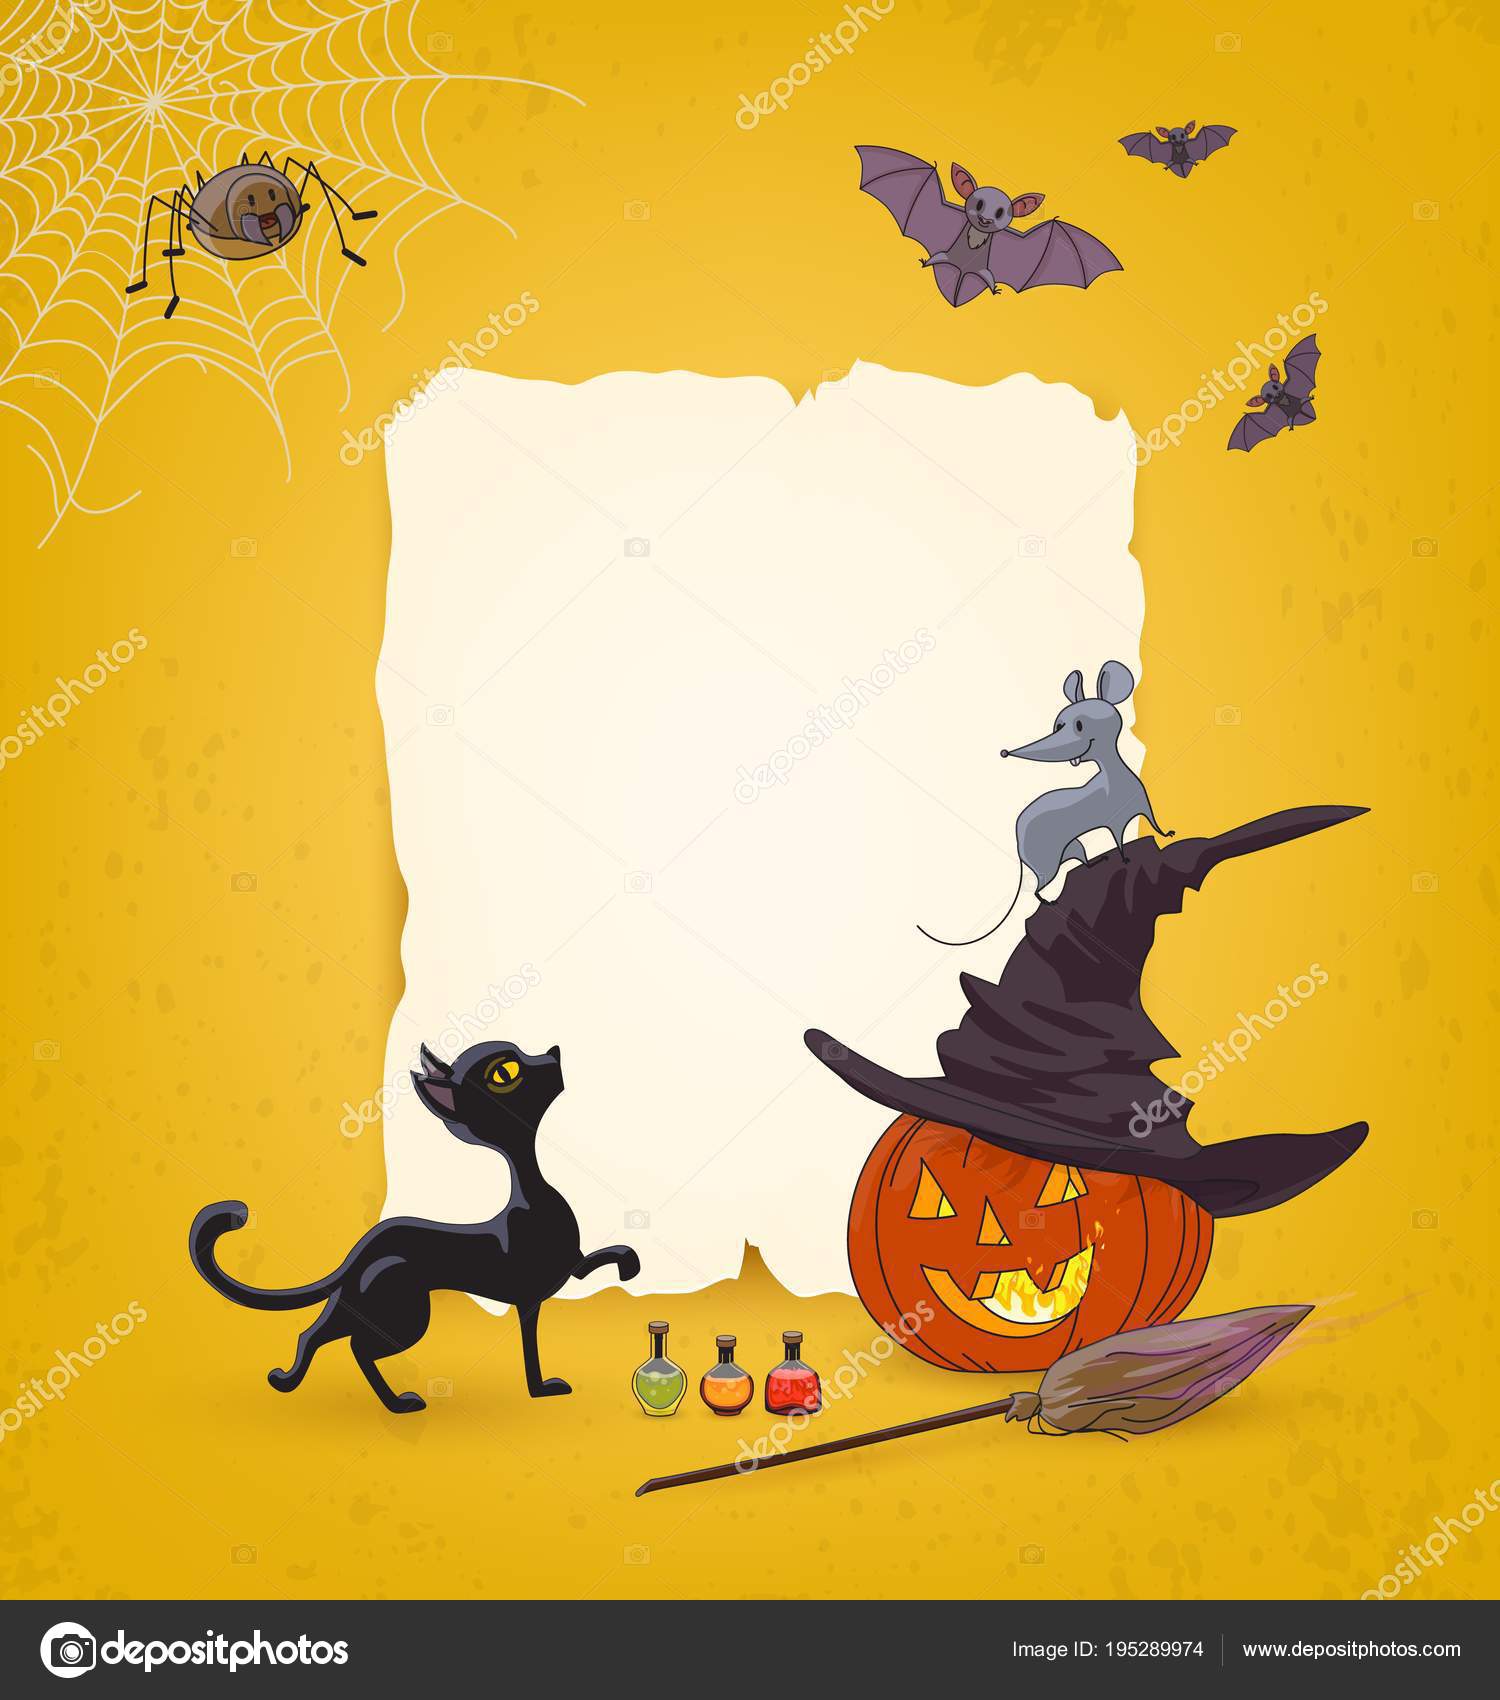 vetor de aranha preta de halloween com um rosto bonito. design de  ilustração de halloween com